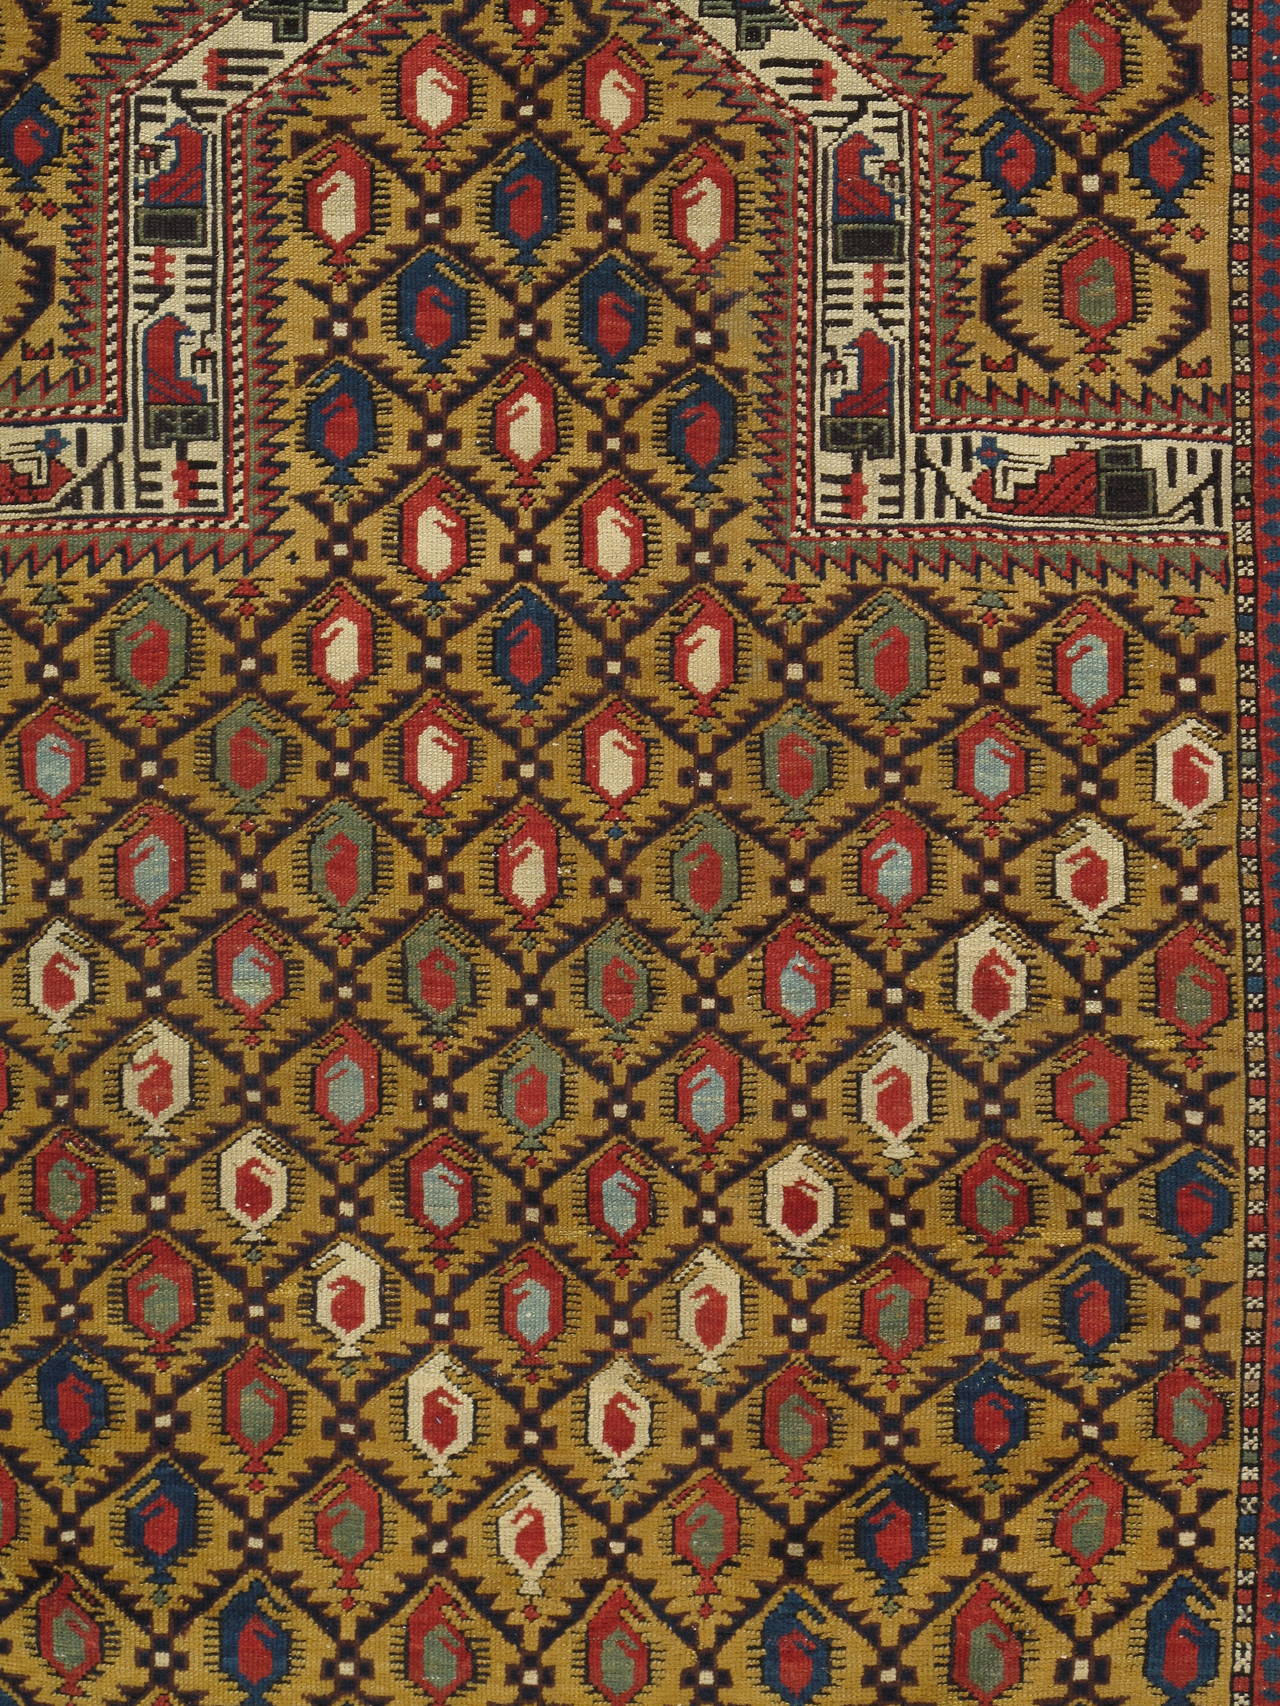 Kazak Gold Ground Antique Marasali Shirvan Prayer Rug, Hand-Knotted, Wool Oriental Rug For Sale